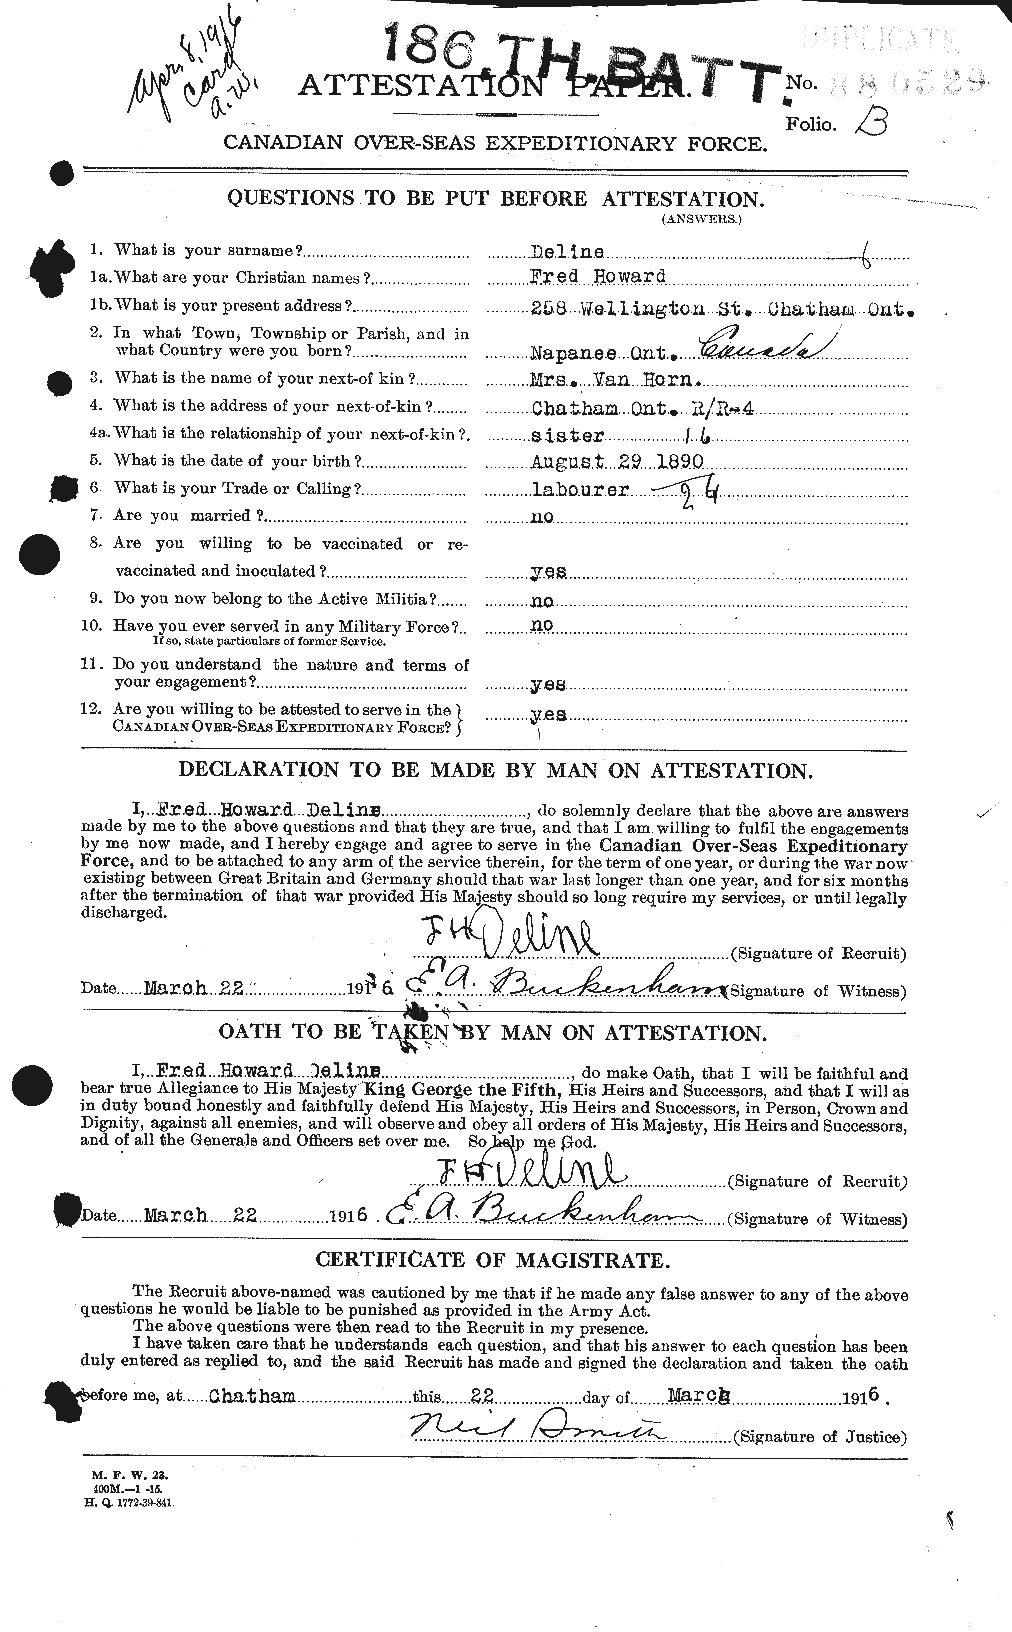 Dossiers du Personnel de la Première Guerre mondiale - CEC 286563a